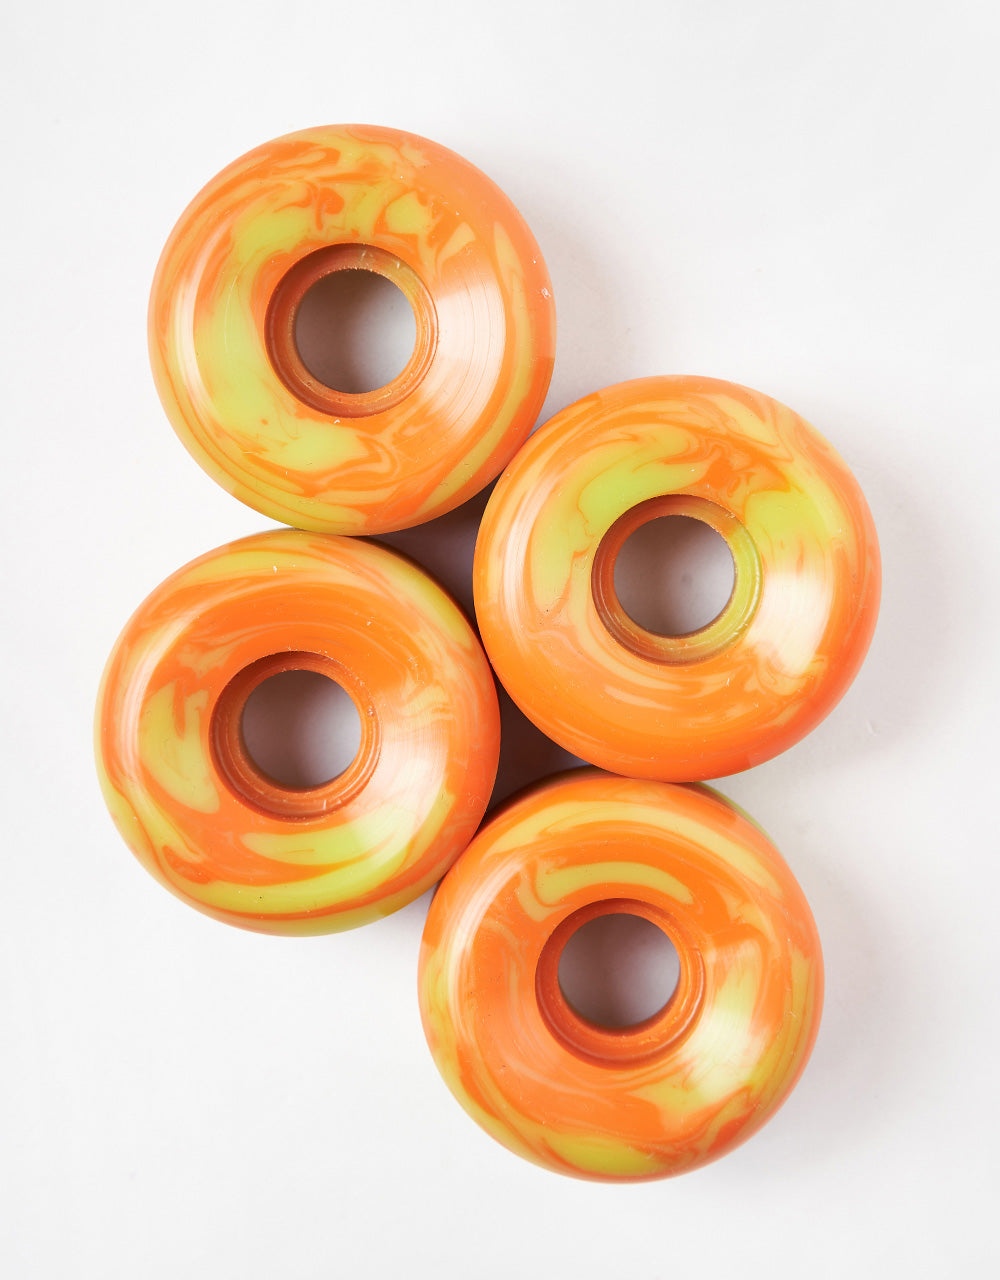 Orbs Specters Swirls Conical 99a Skateboard Wheels - 52mm